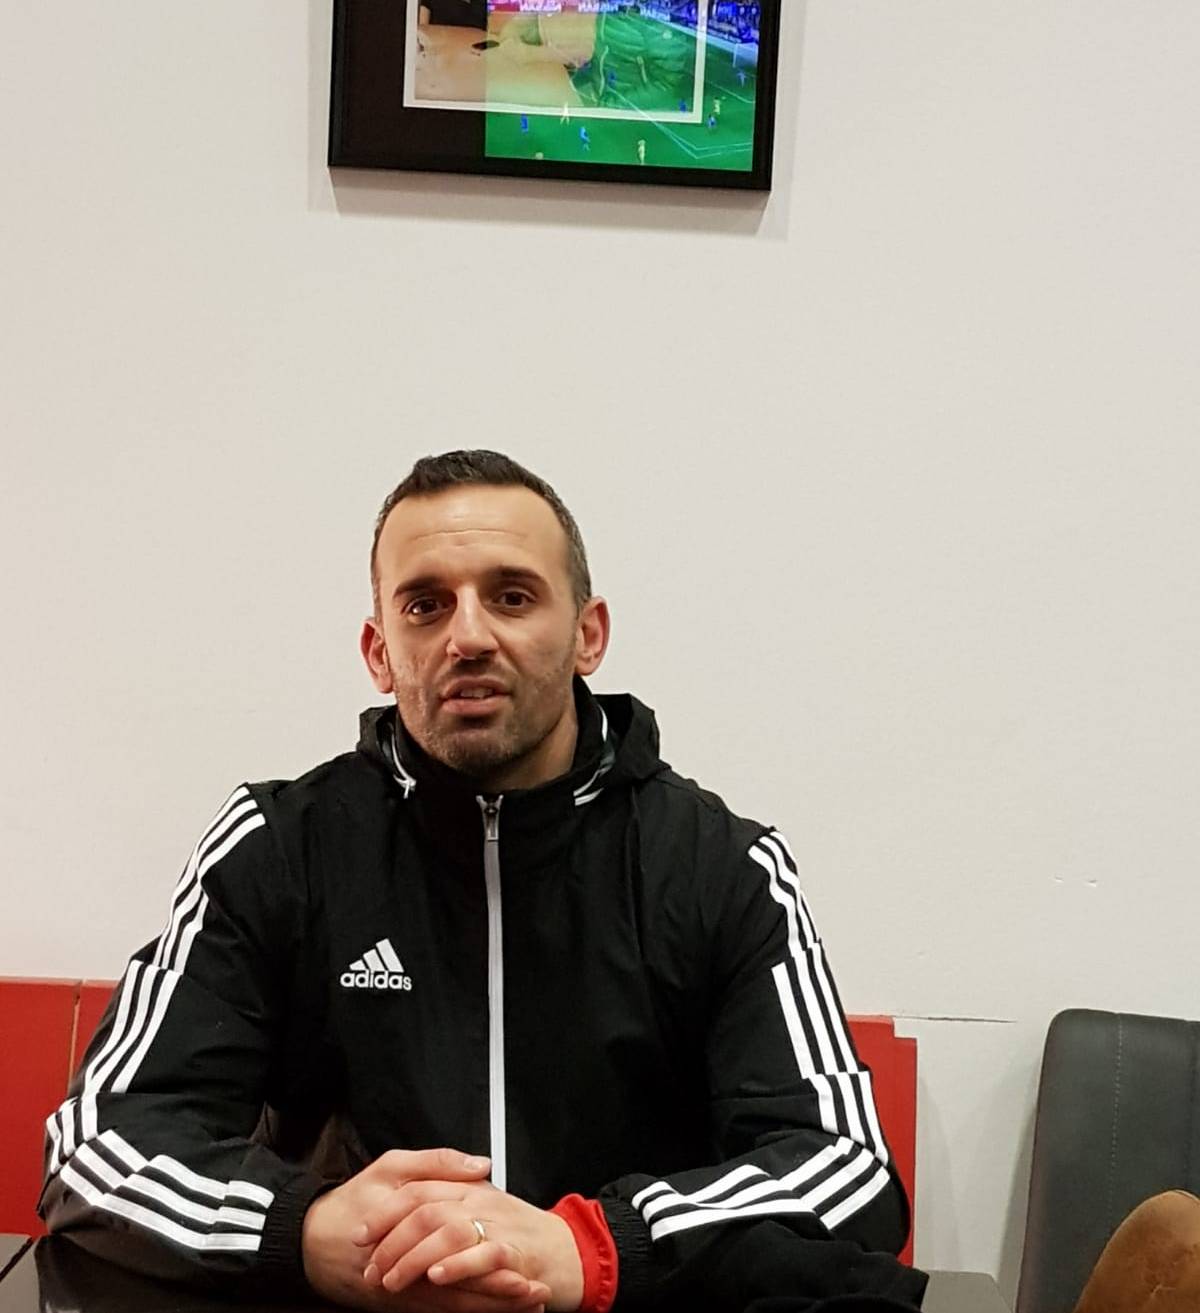  Daniele Varveri spielte Anfang der 2000er für Fortuna Düsseldorf. Danach war er unter anderem für Ratingen, Wülfrath, Velbert und Remscheid aktiv. Als Trainer hat er Ronsdorf und Dönberg gecoacht. 